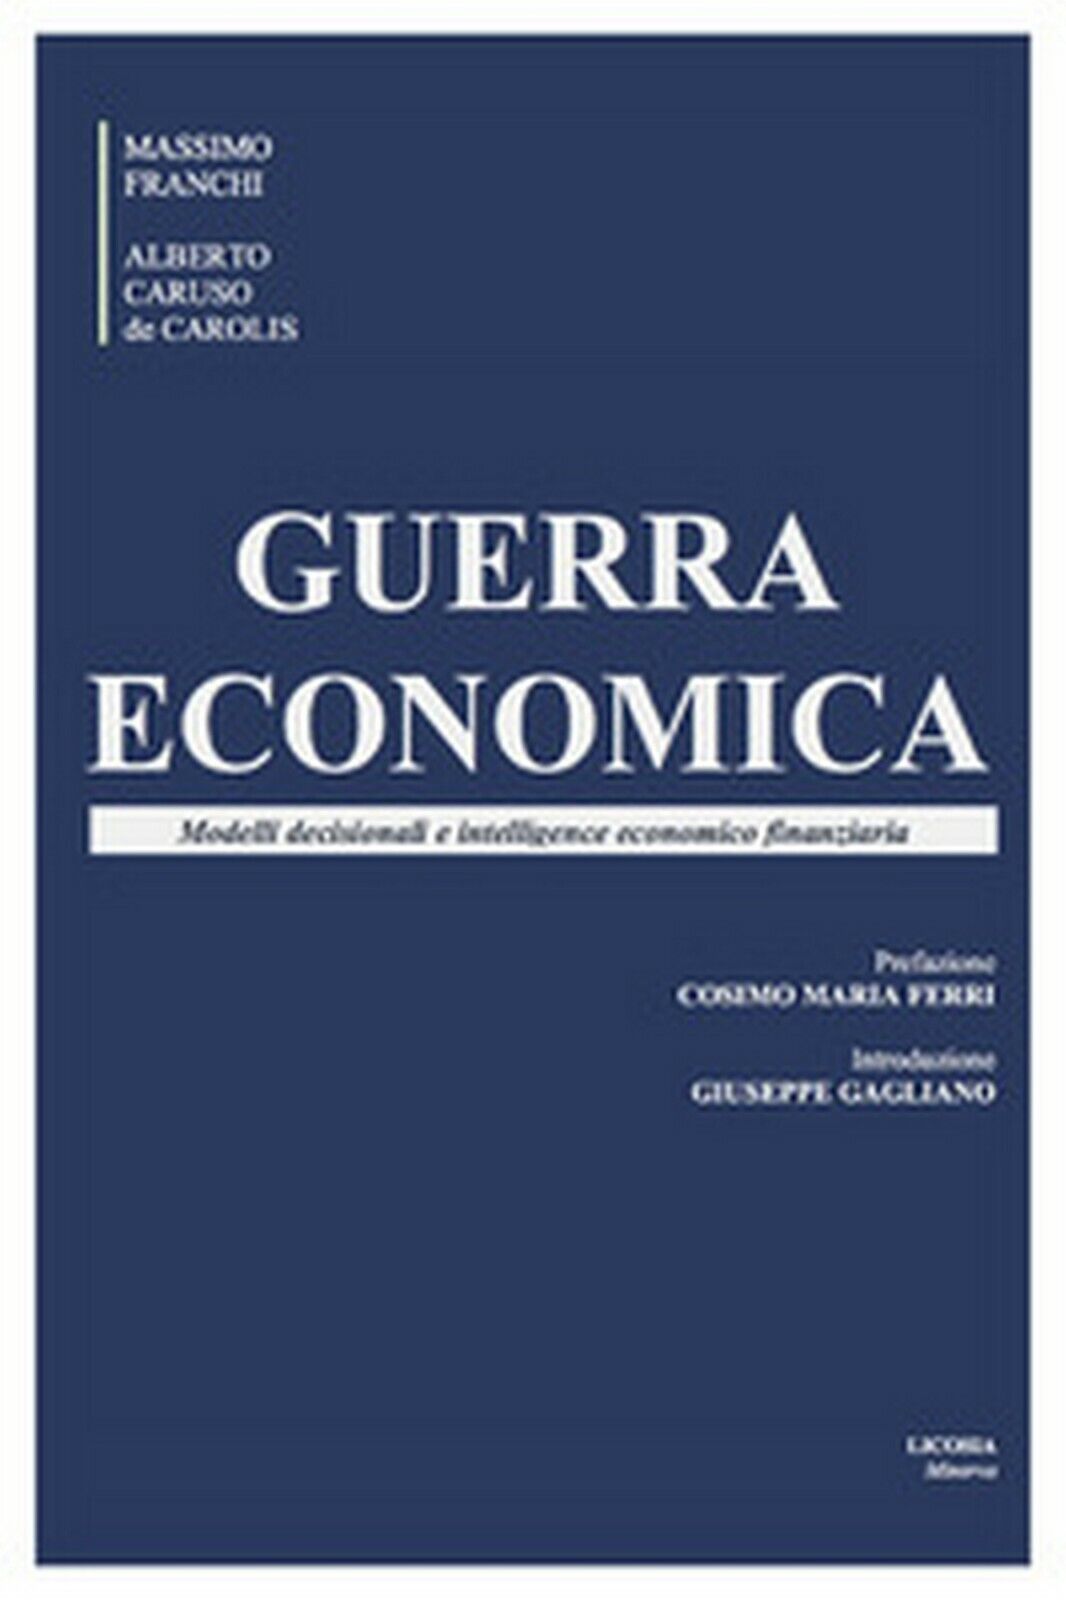 Guerra economica. Modelli decisionali e intelligence economico finanziaria  libro usato